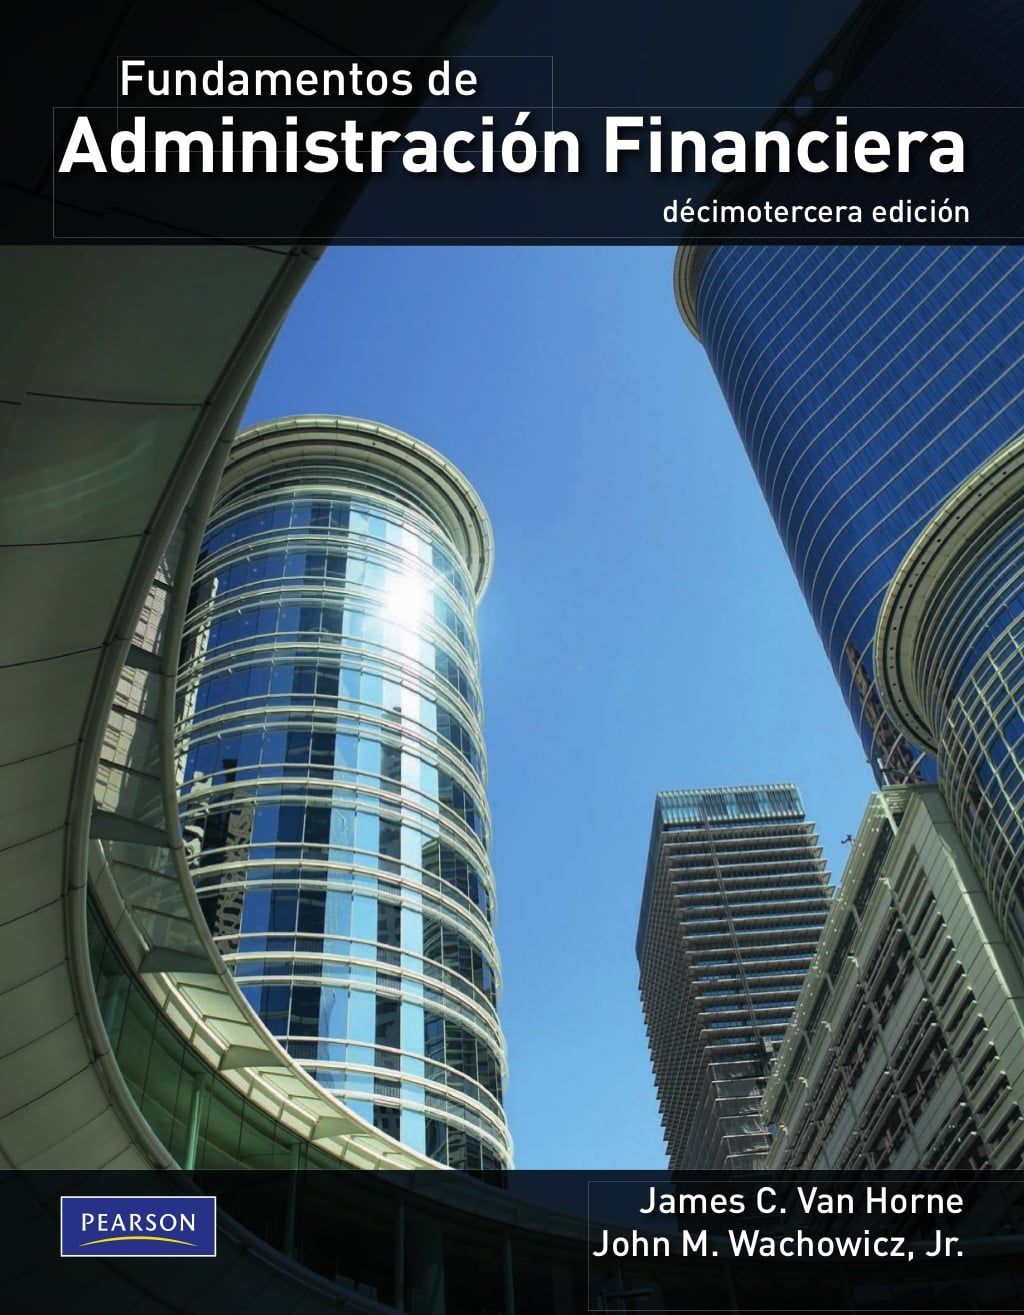 Fundamentos de Administración Financiera 13 Edición James C. Van Horne PDF